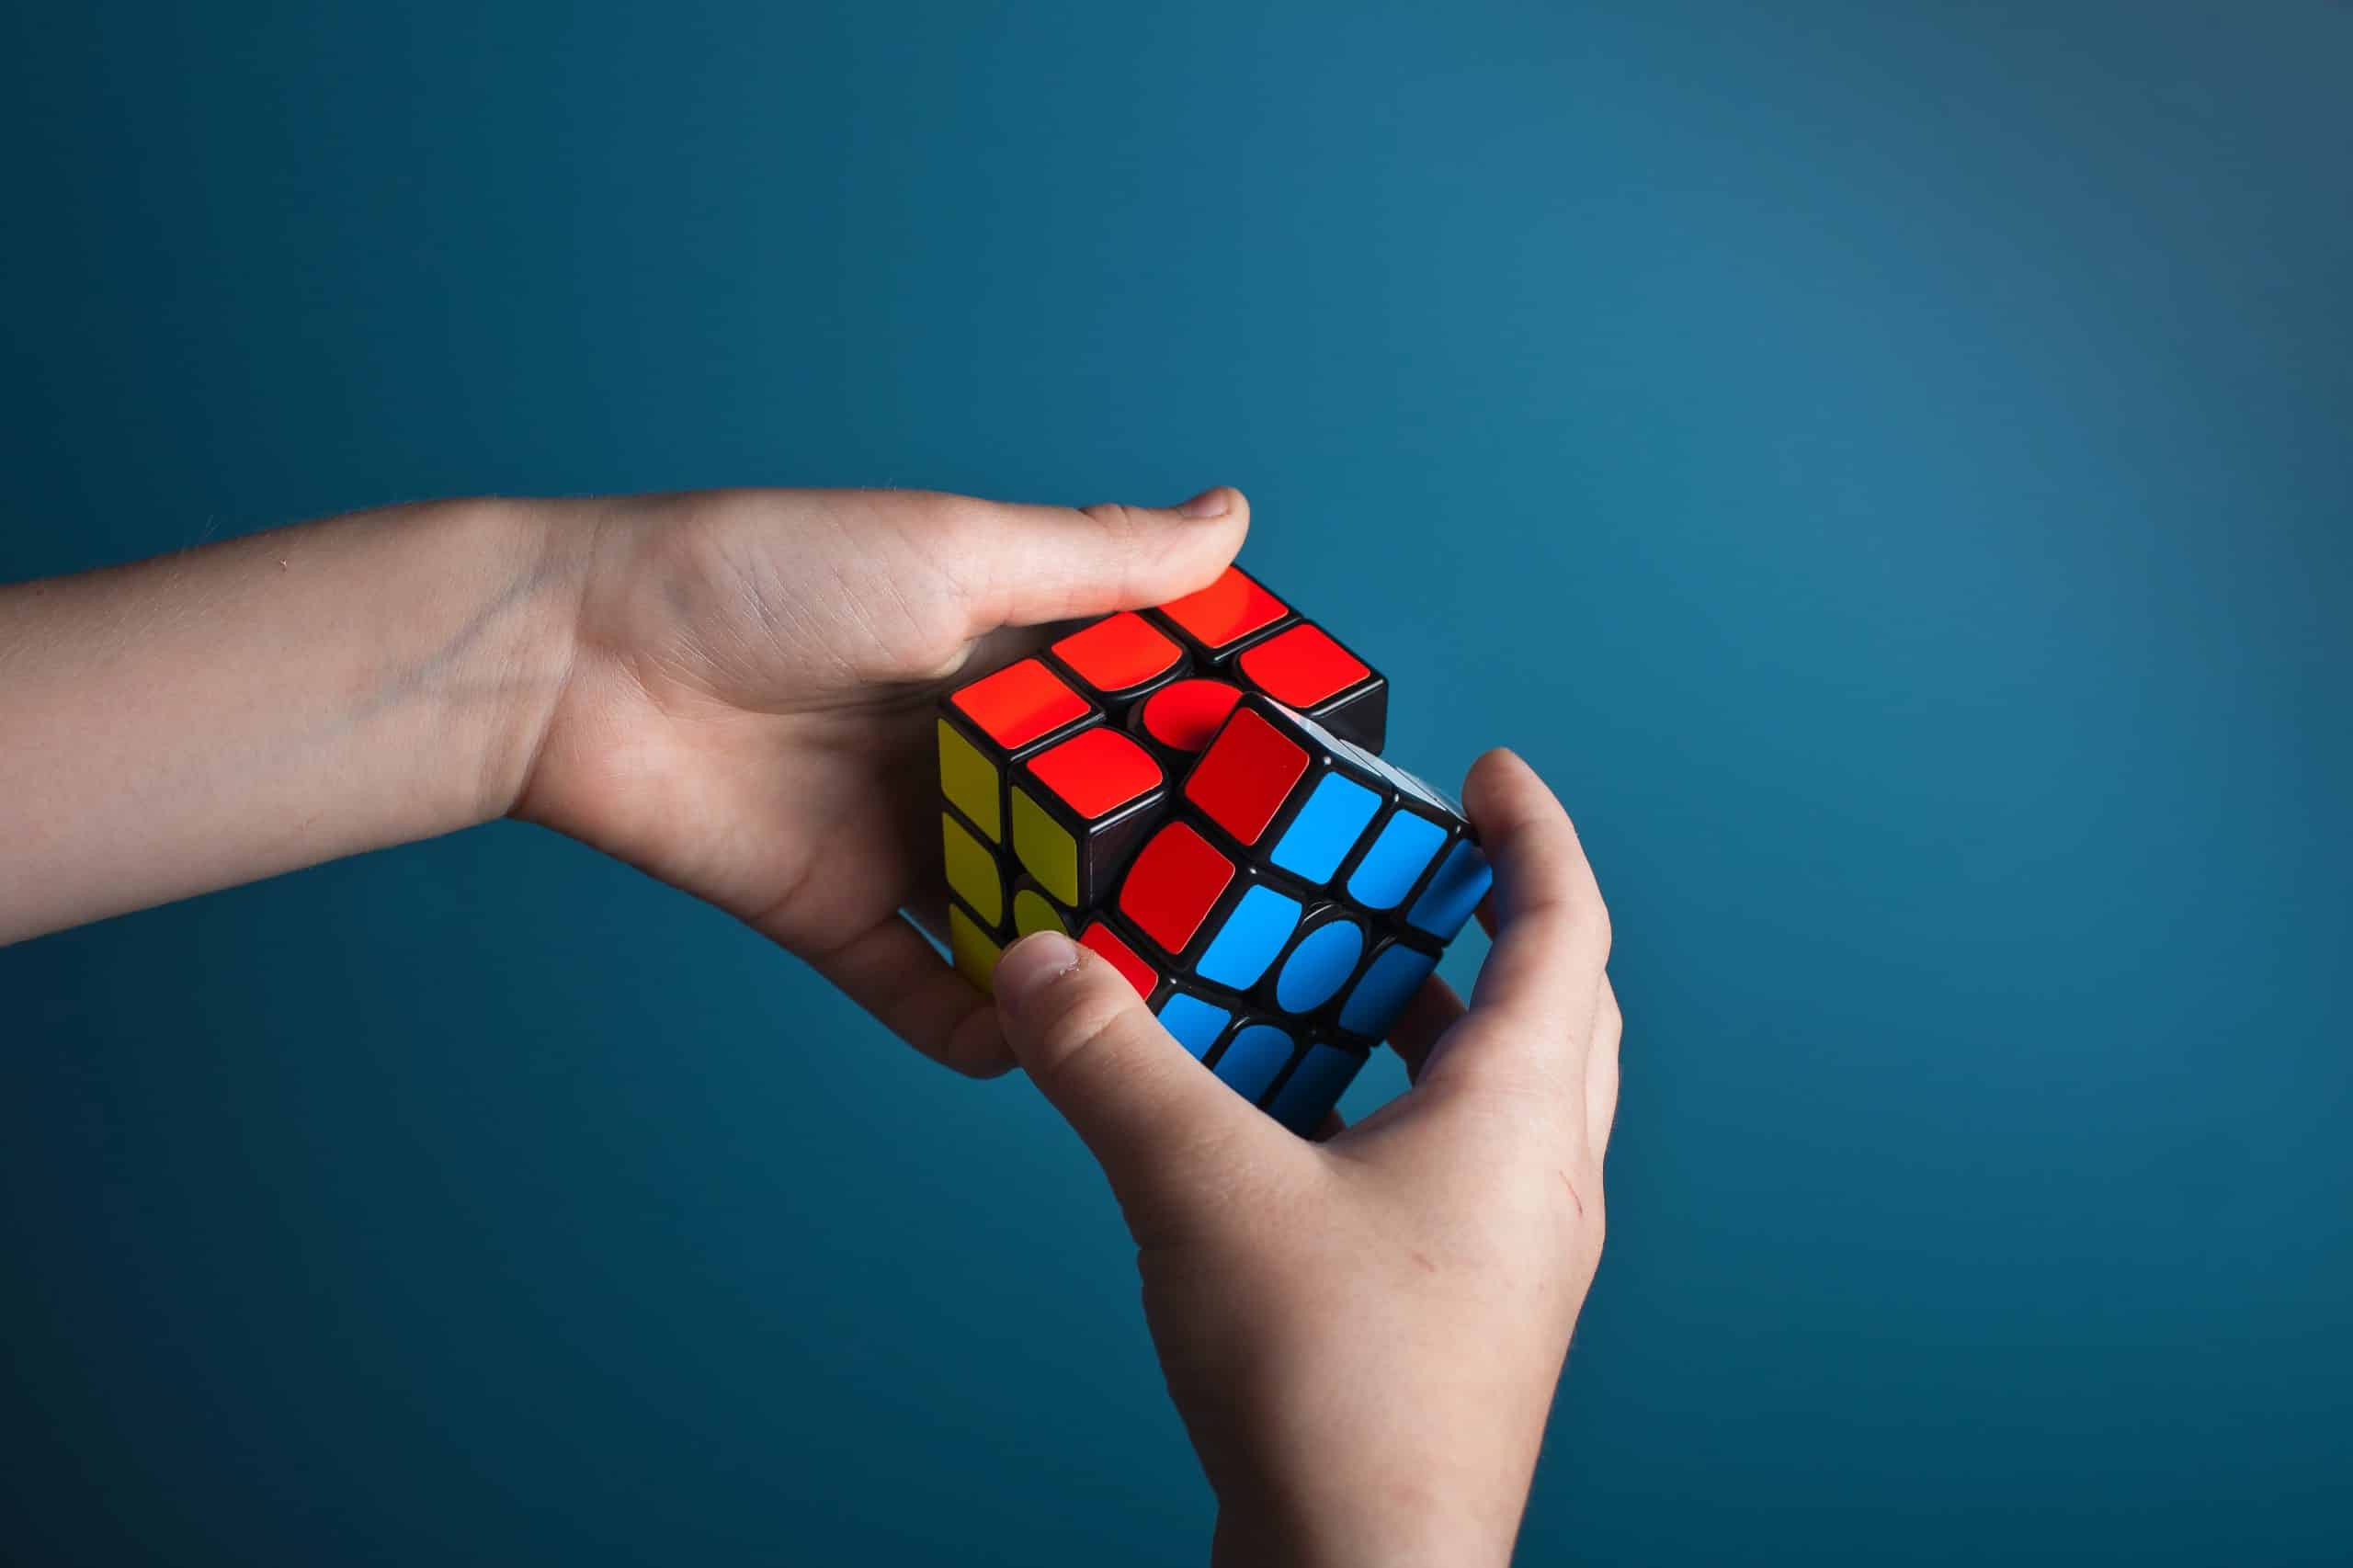 A imagem simboliza a resolução de problemas através de um cubo mágico sendo solucionado